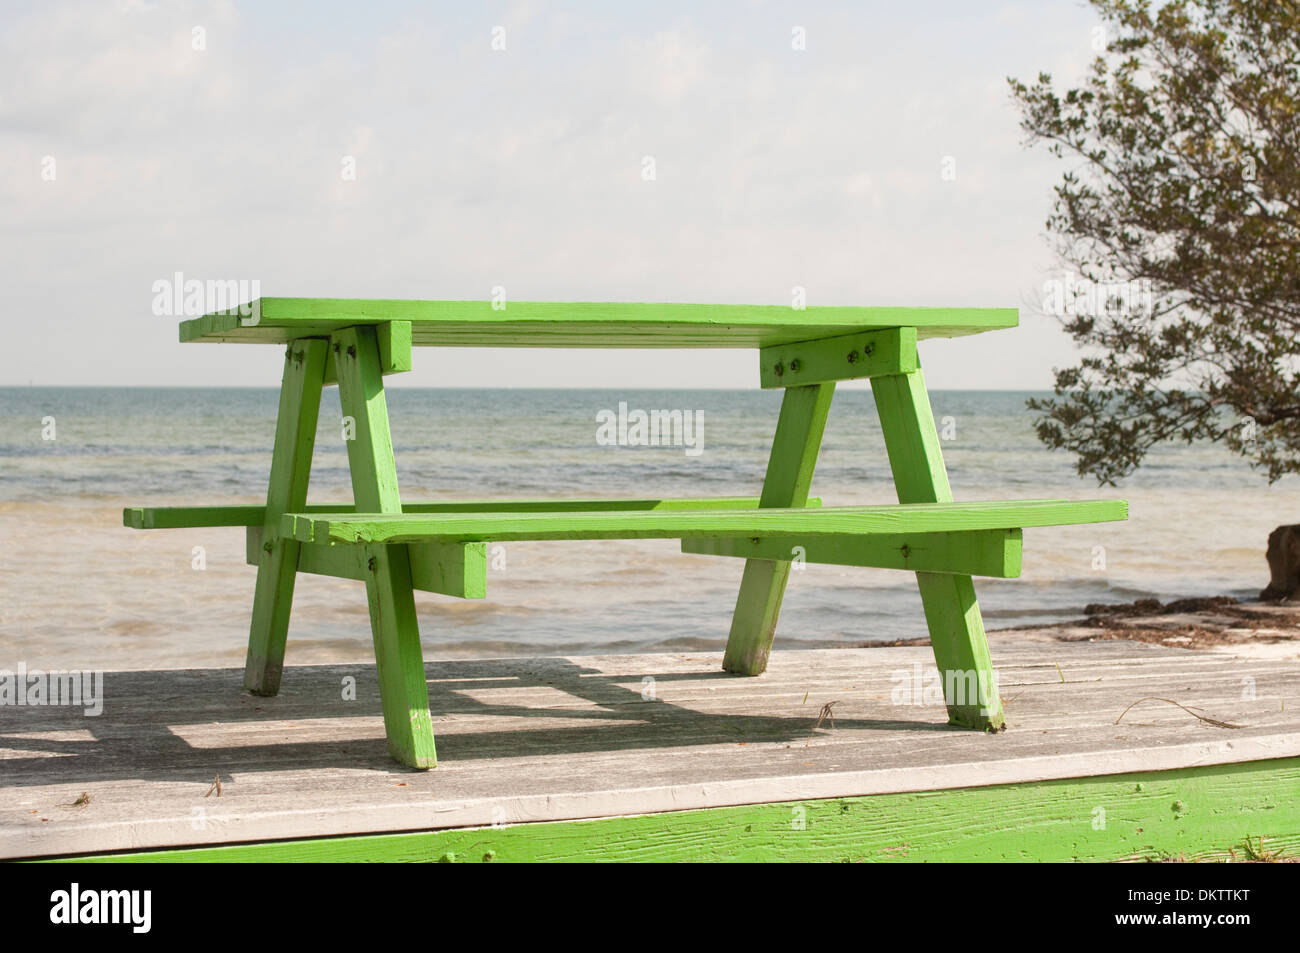 Une table de pique-nique vert lumineux donne sur la plage. Banque D'Images